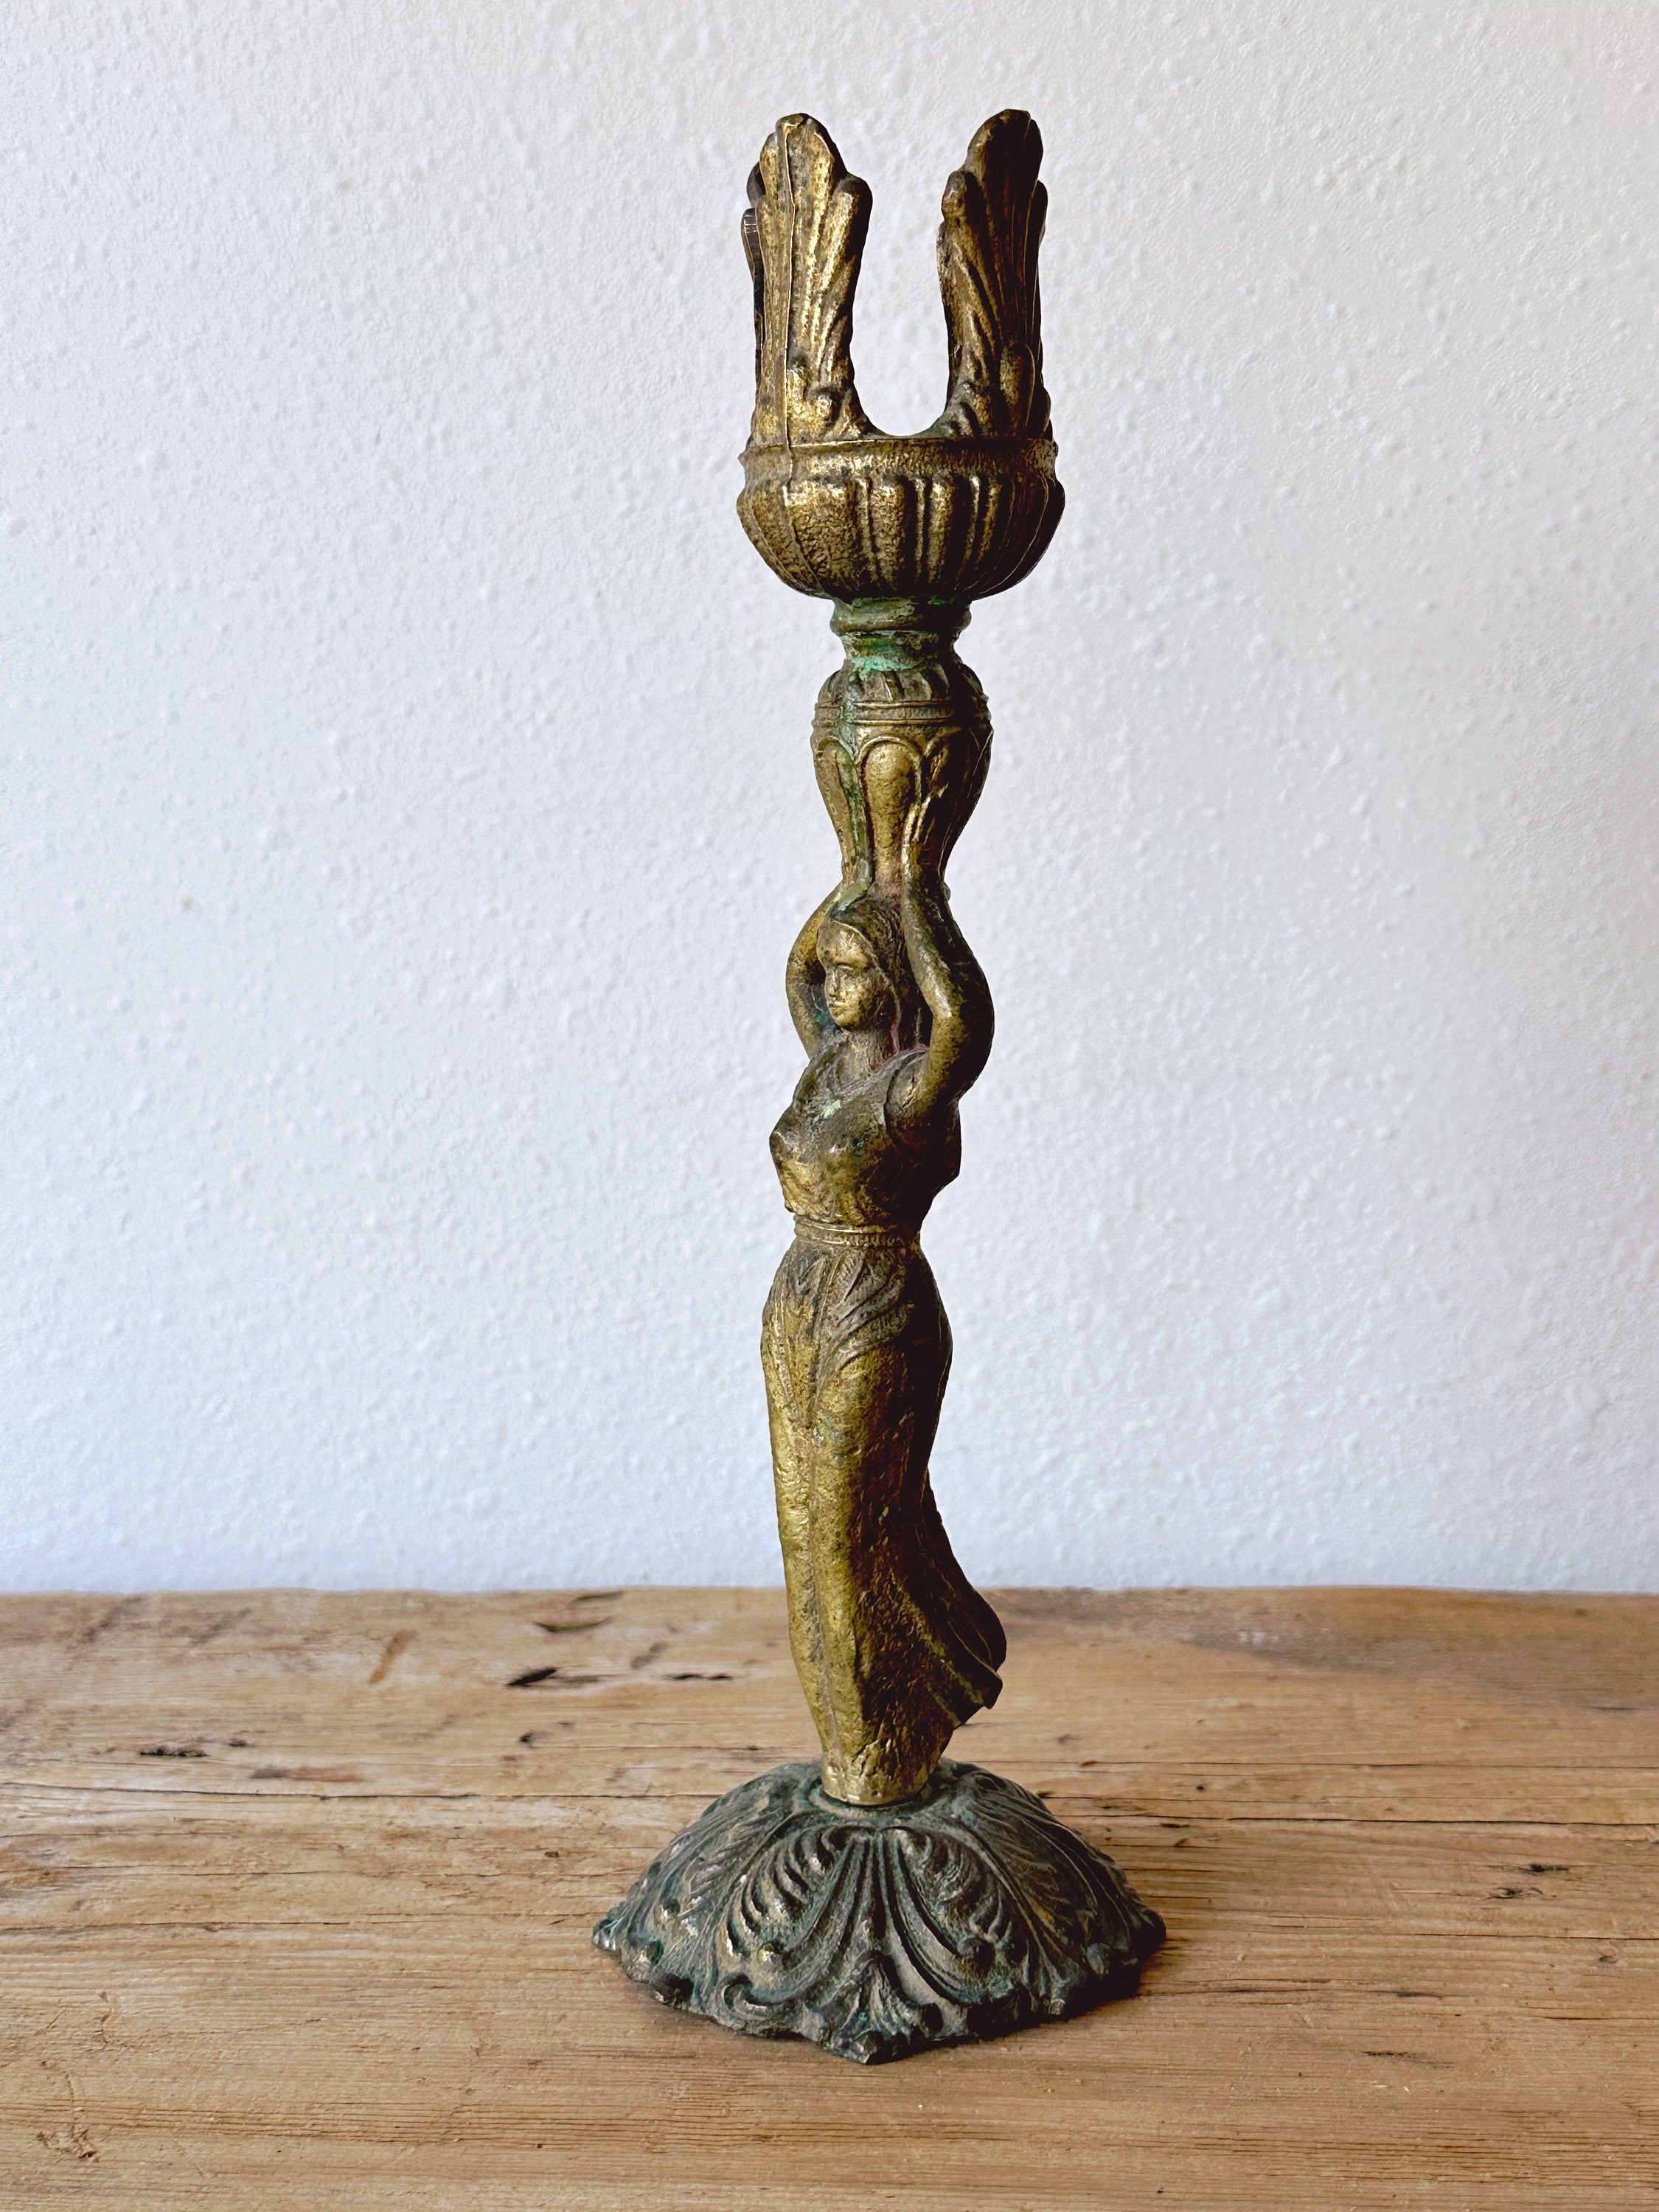 Vintage Egyptian Revival Style Brass Figural Woman Candlestick Holder | Antique Elegant Lady Goddess Tea Light Holder | Mantle Decor